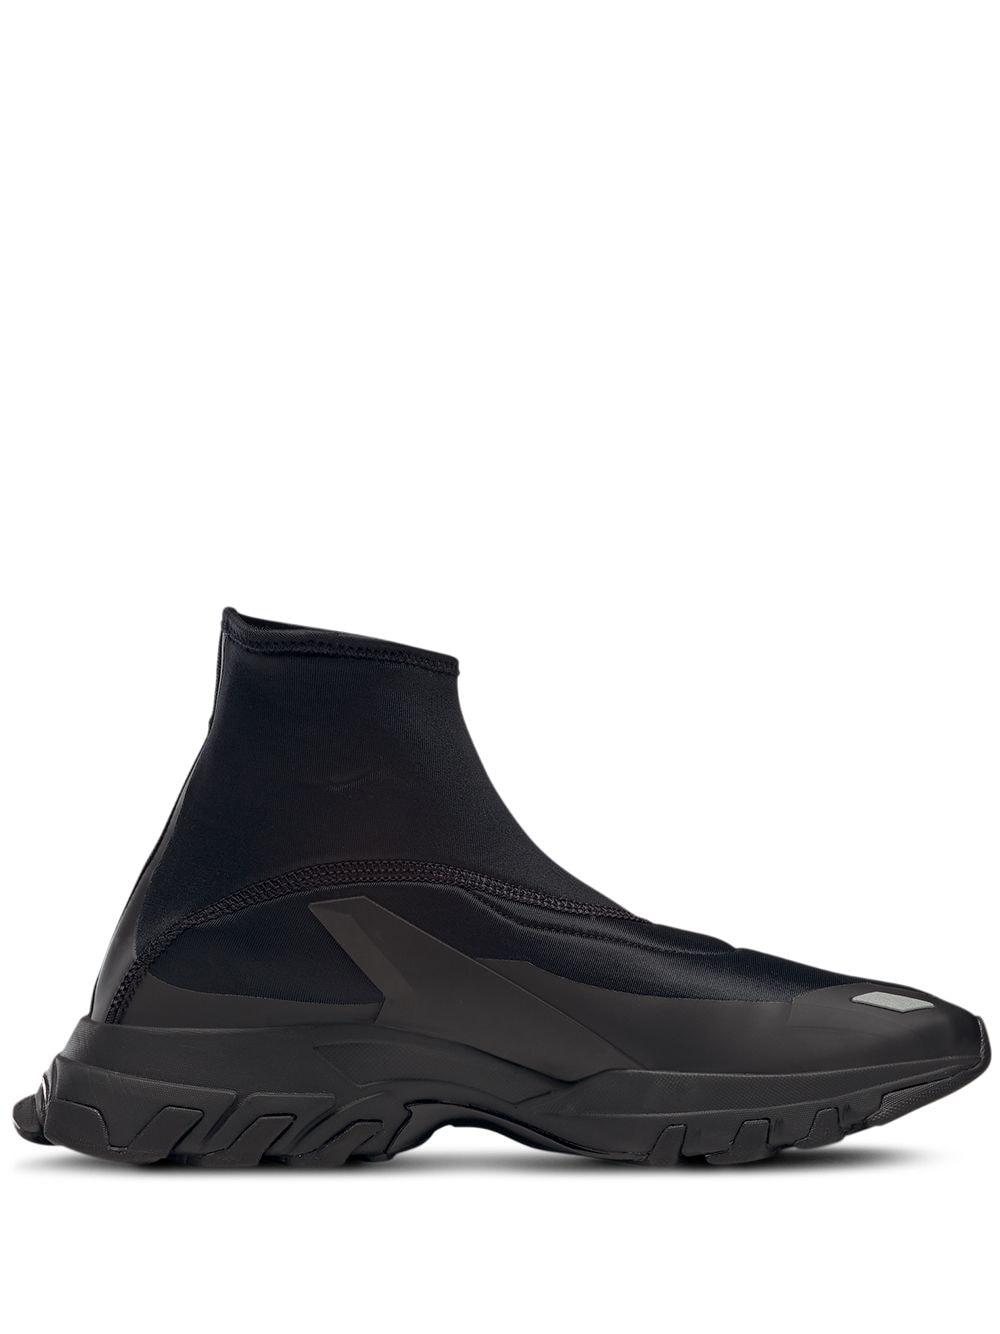 Reebok Dmx Trail Hydrex Sock Sneakers in Black | Lyst